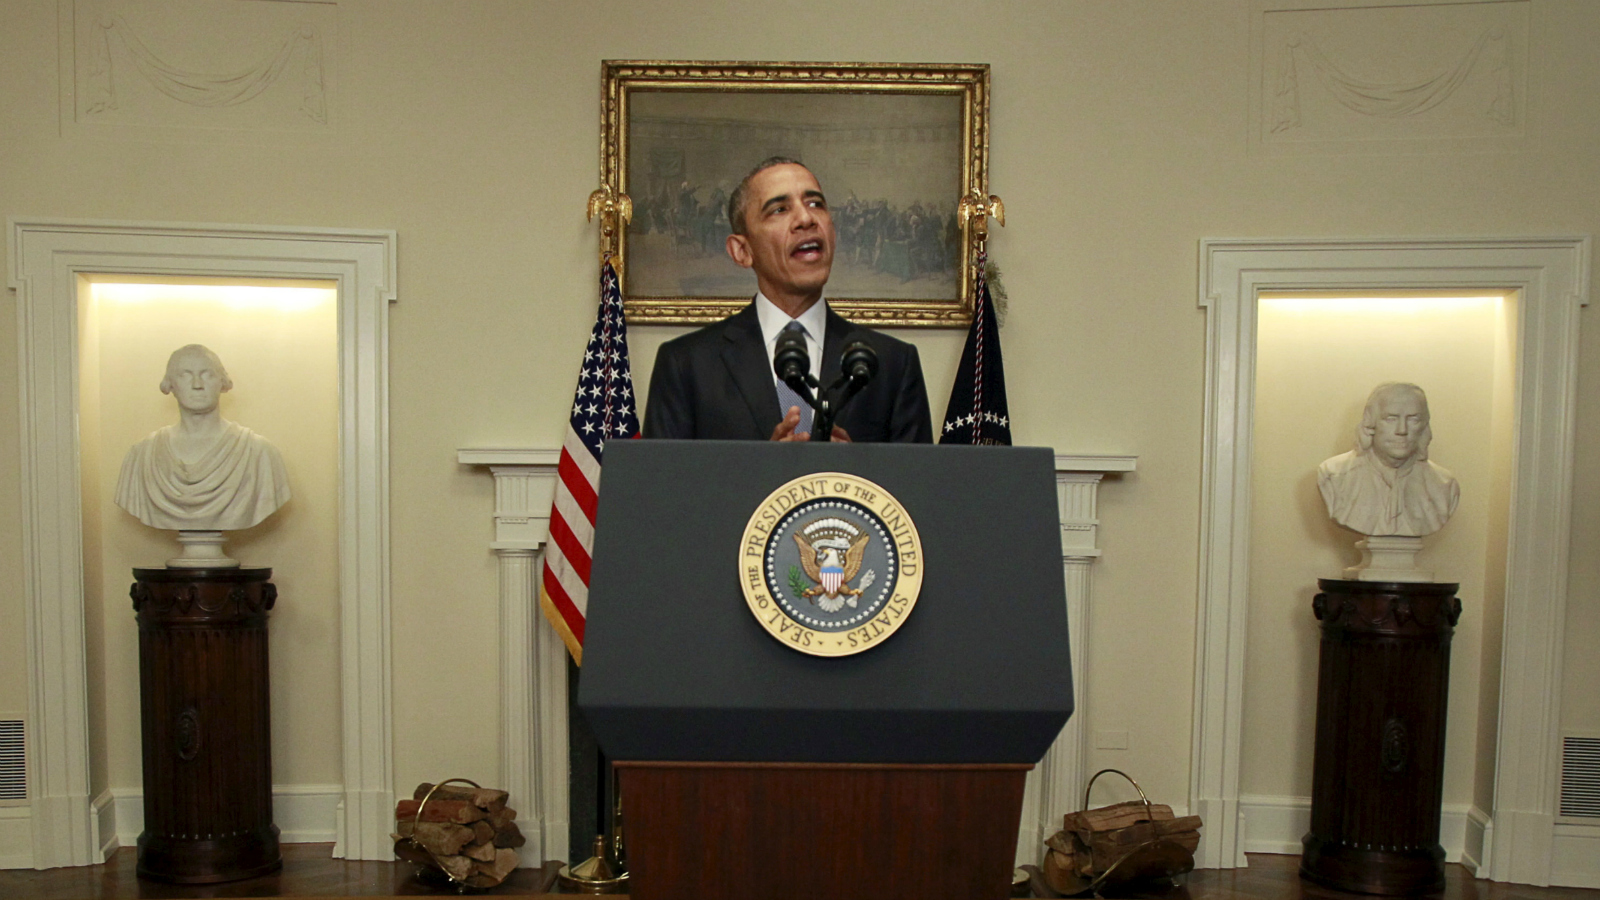 Obama speechifying